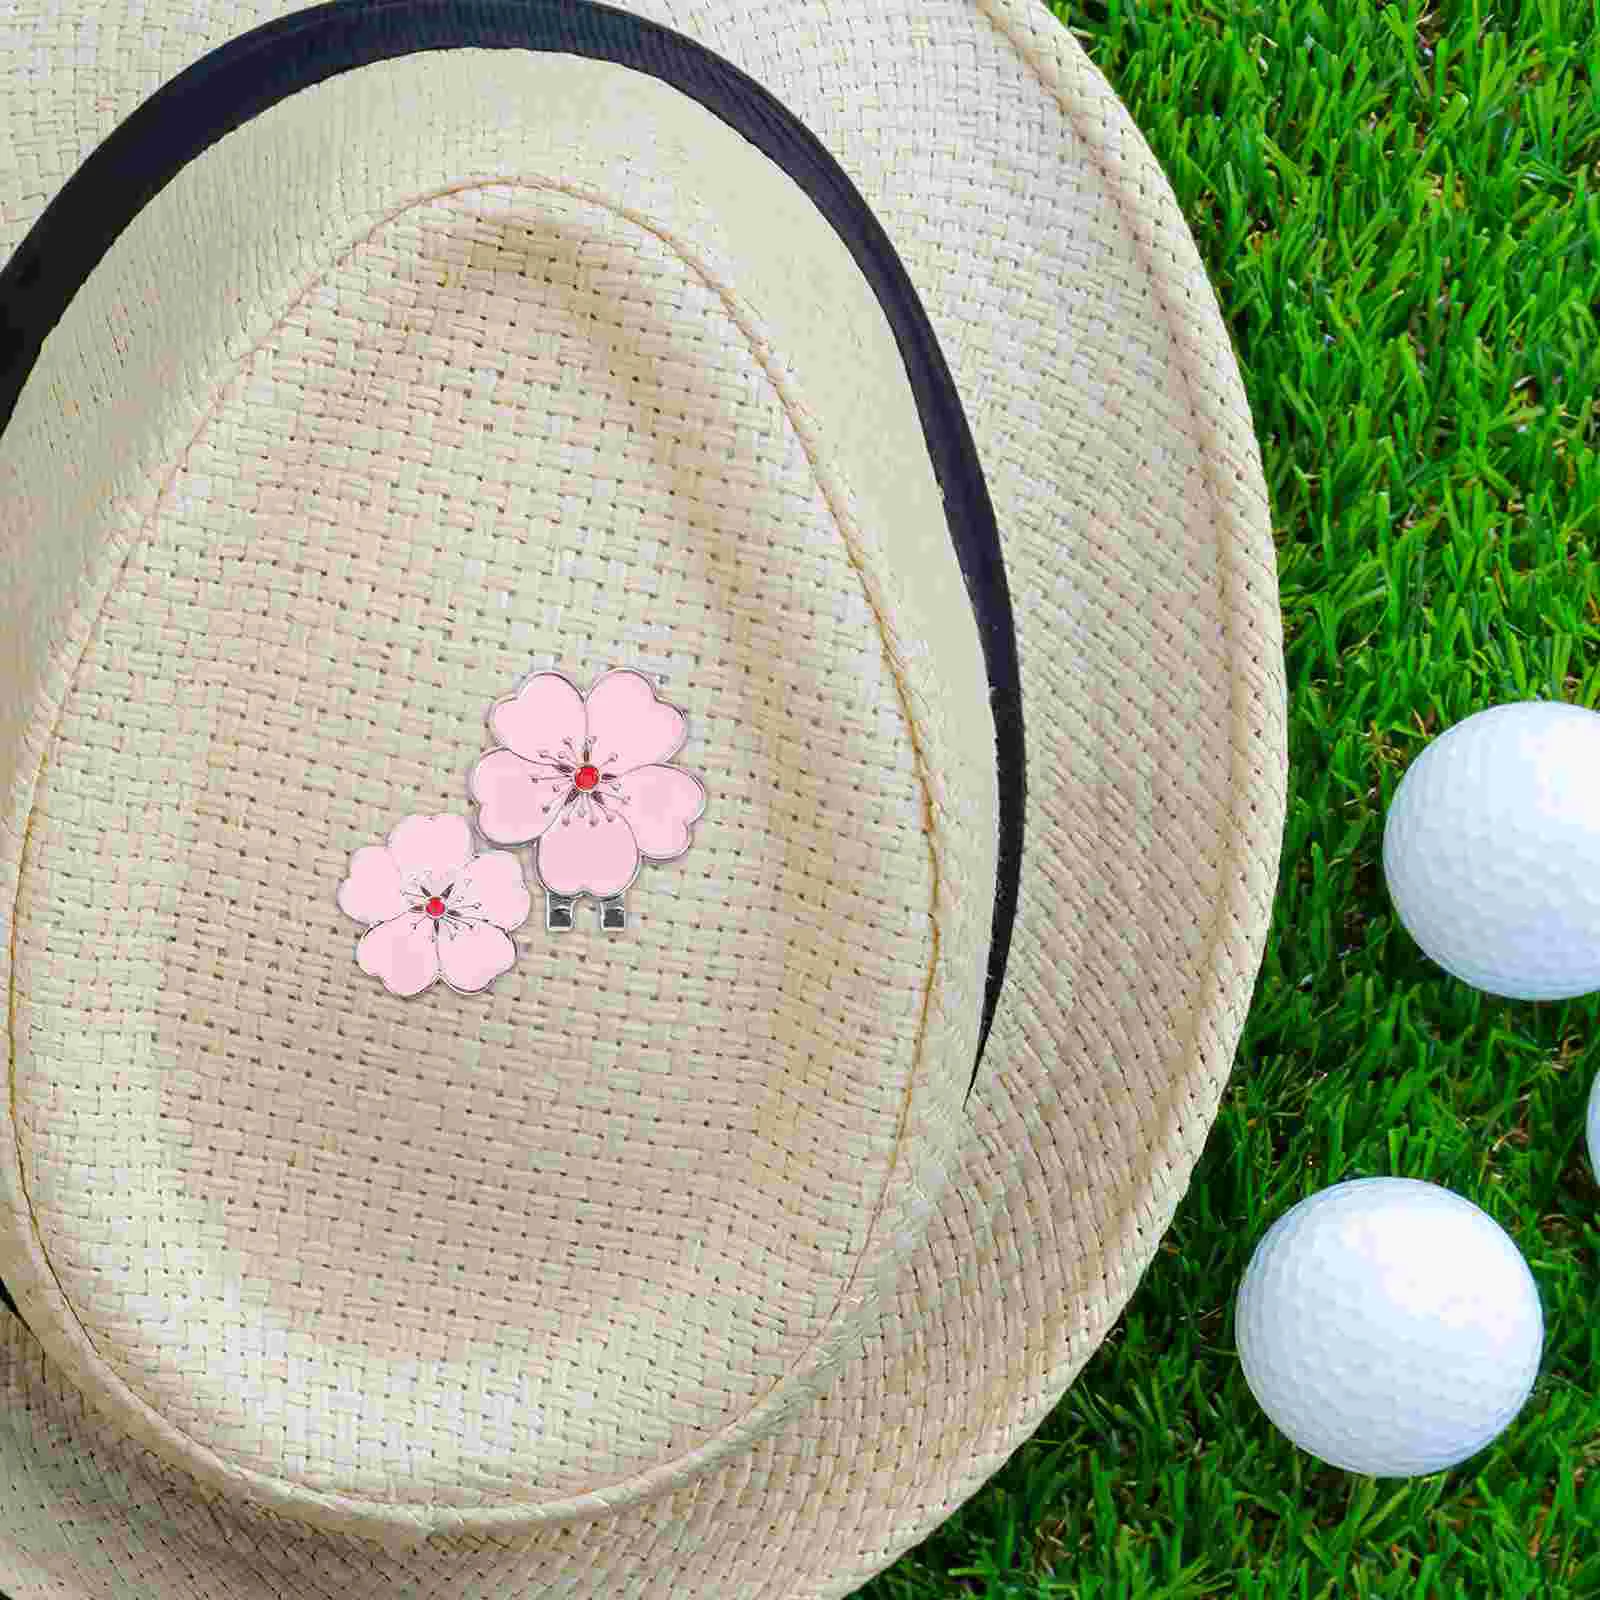 남성용 섬세한 휴대용 금속 마그네틱 골프 모자 클립, 골프 마커 장식 액세서리